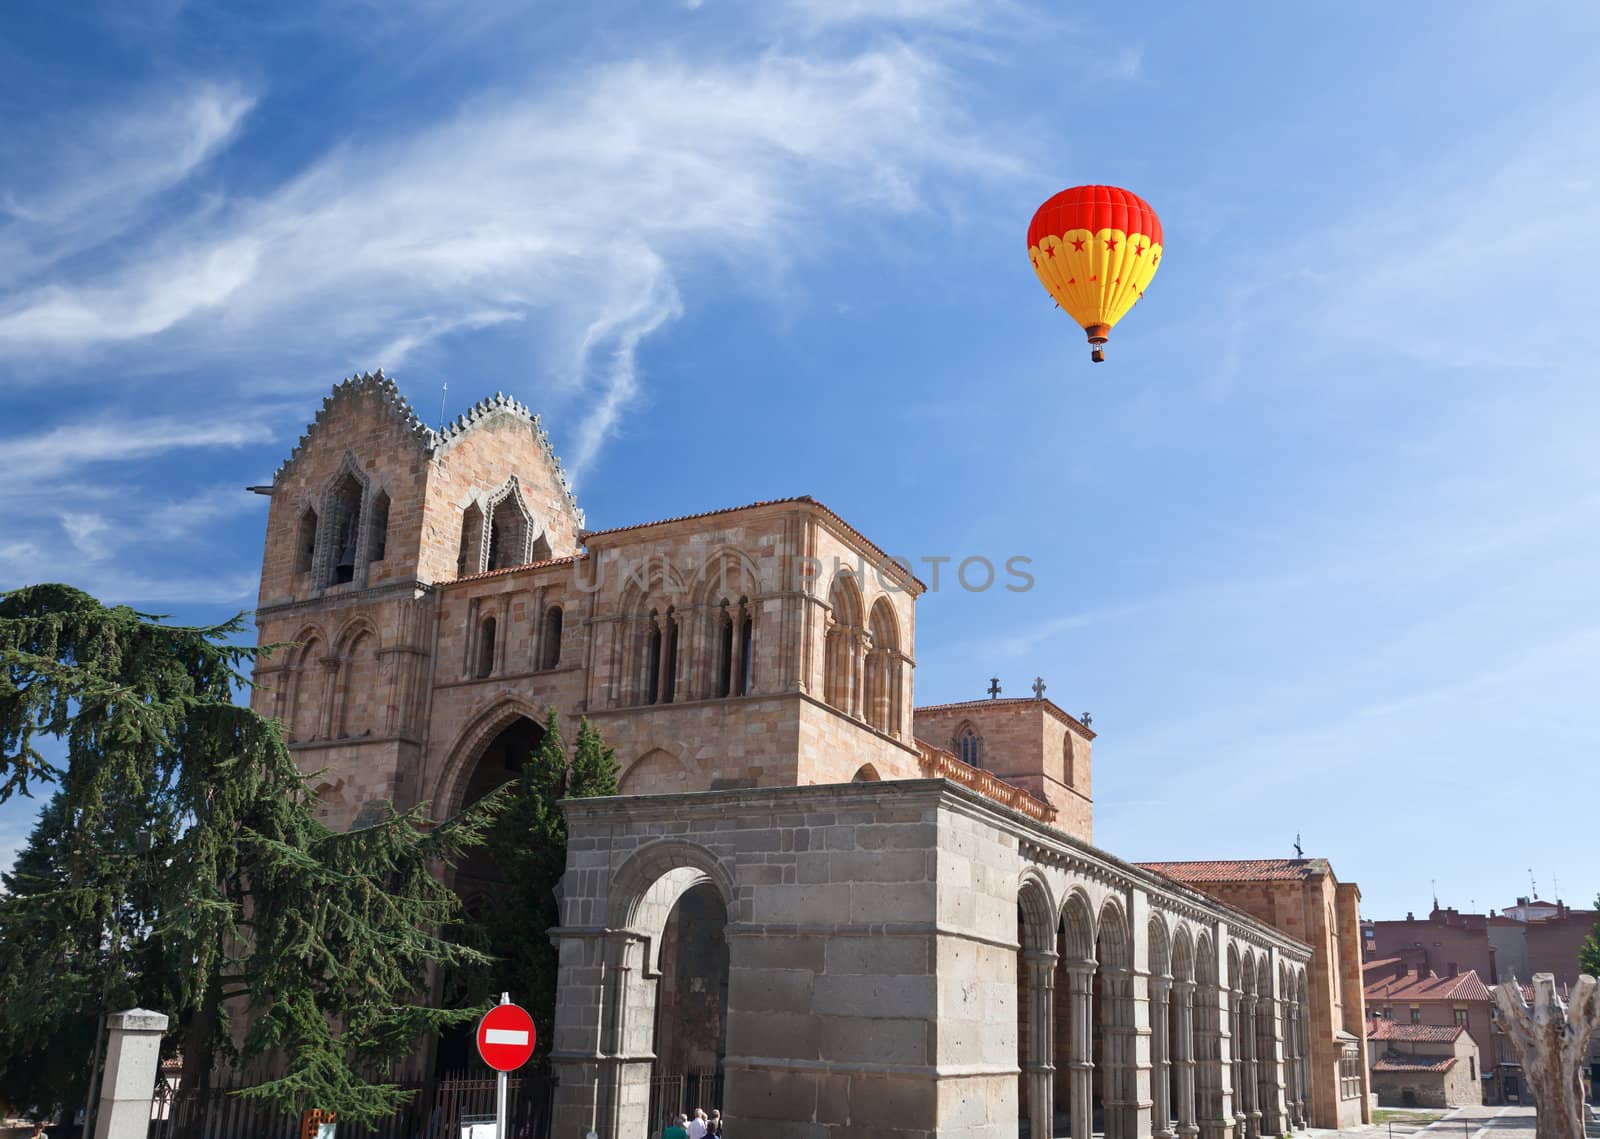 The San Vicente Basilica in Avila, Spain 